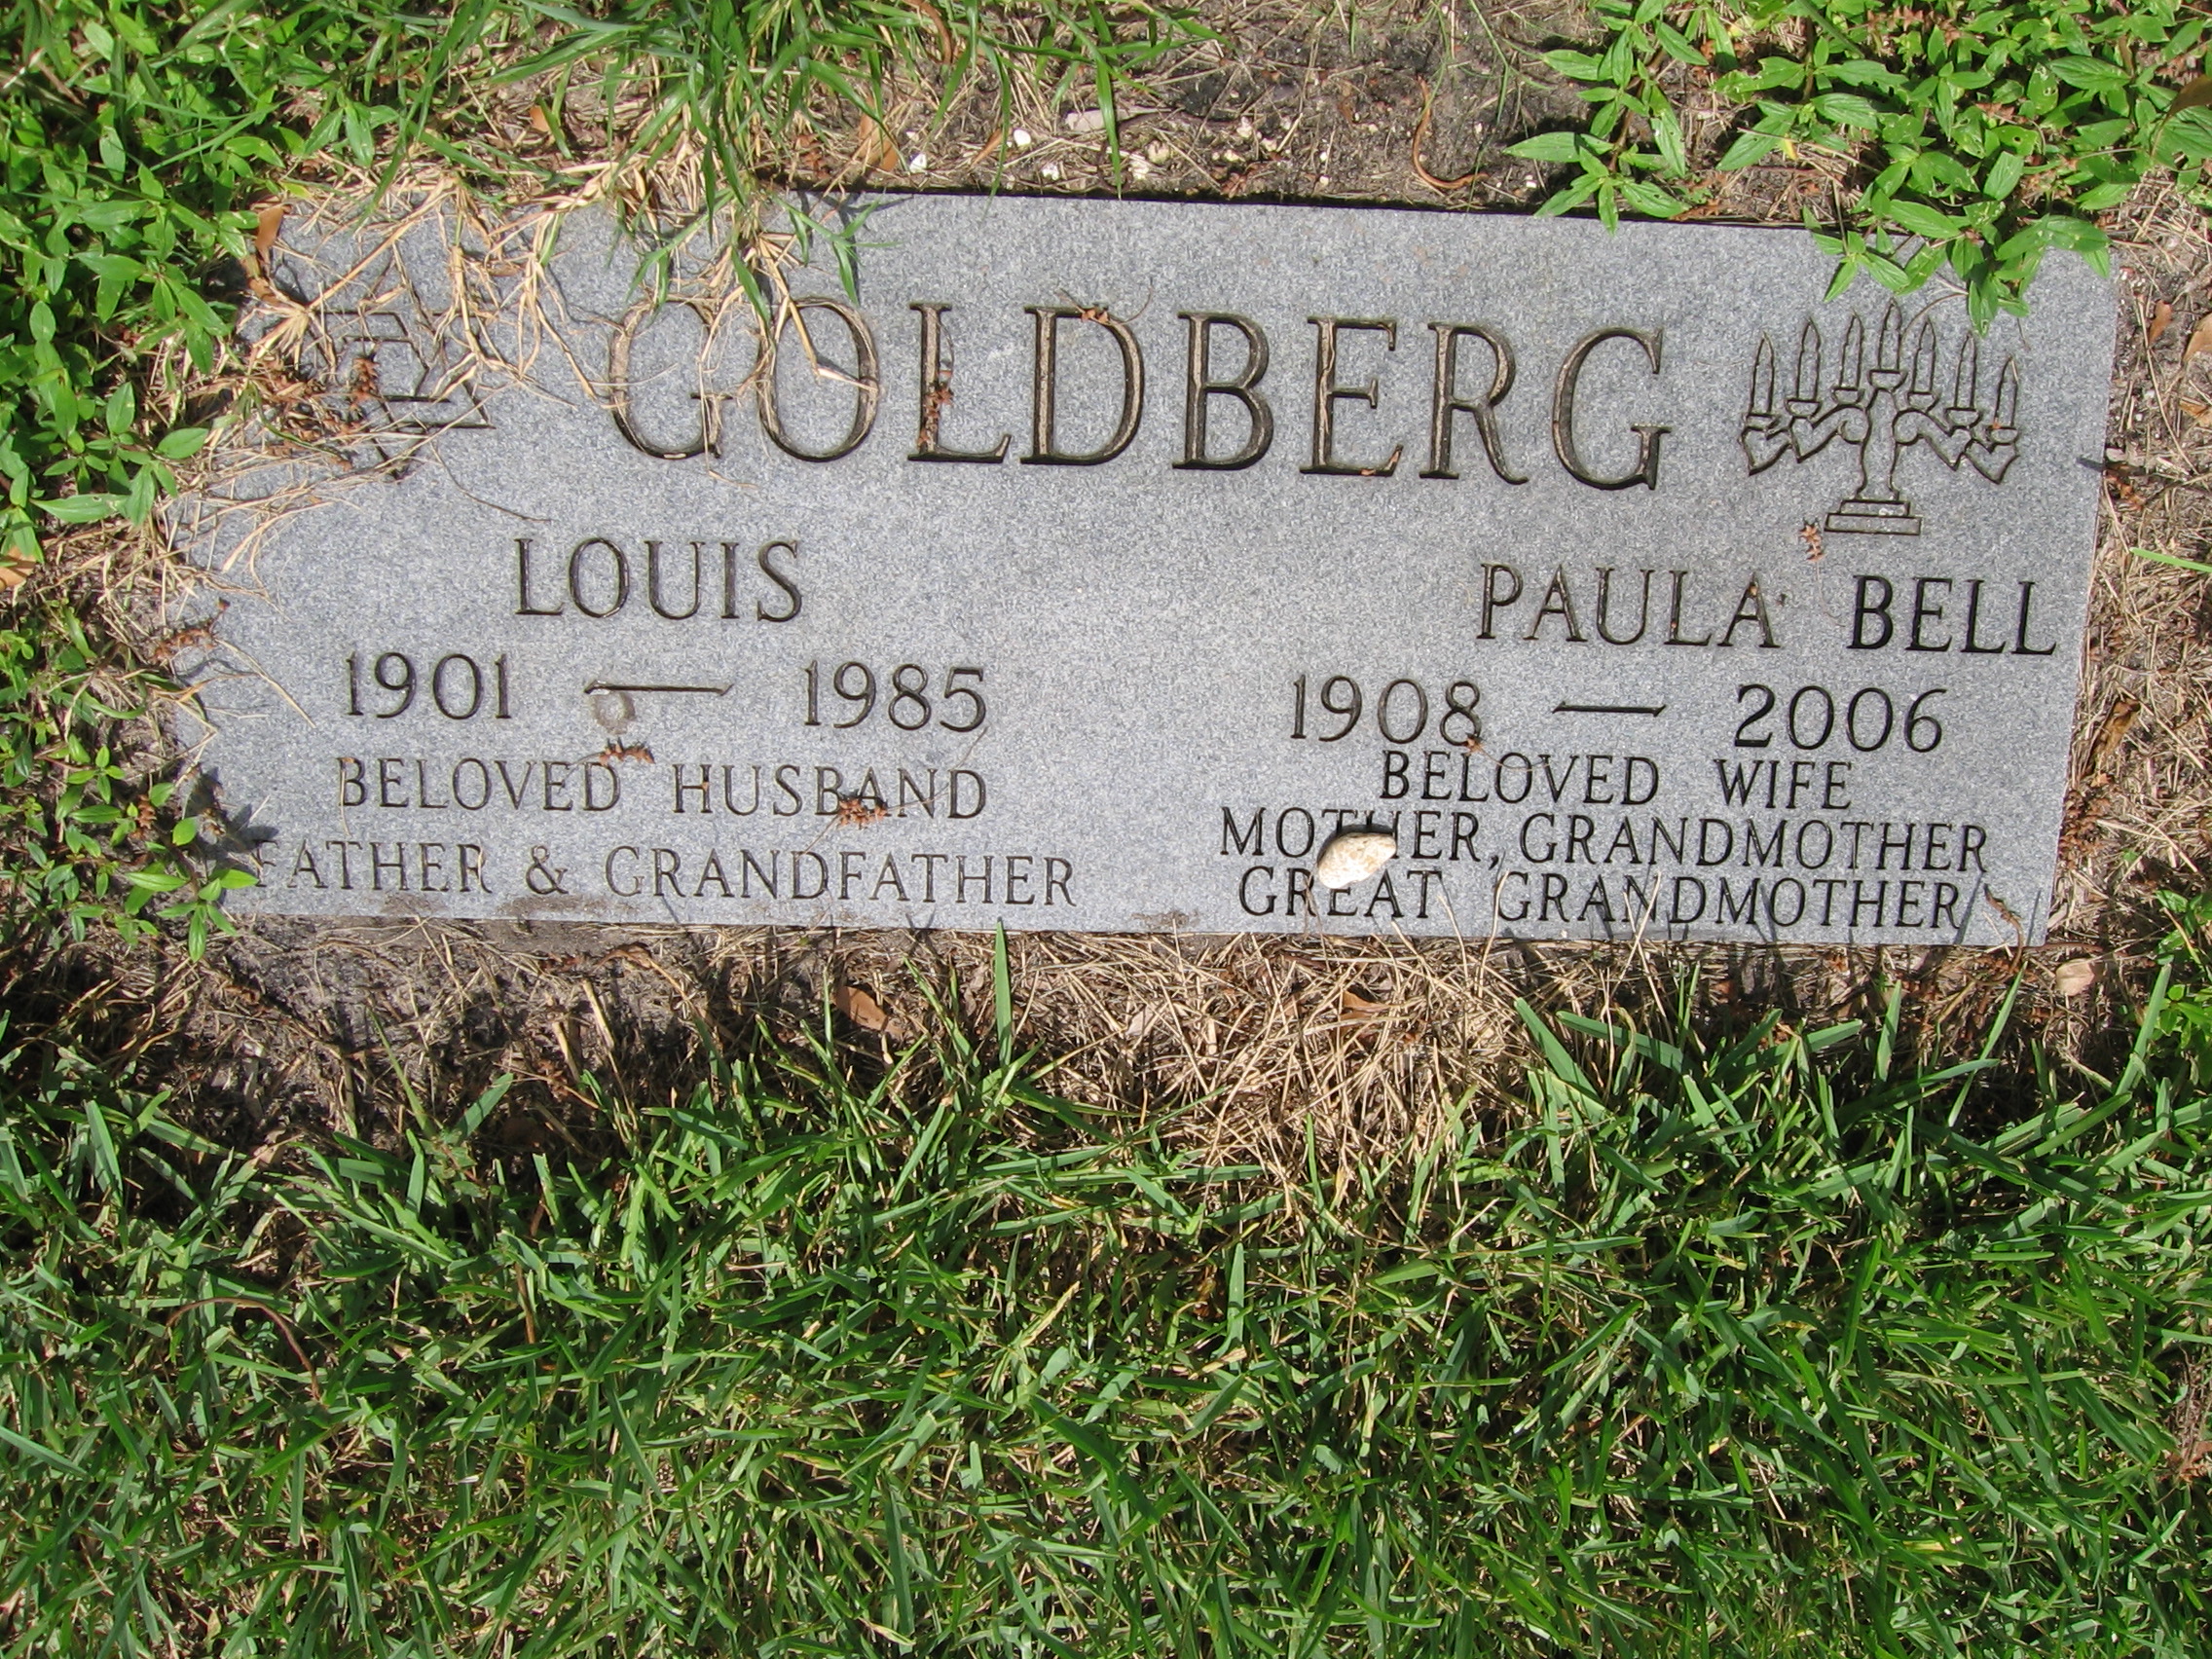 Louis Goldberg